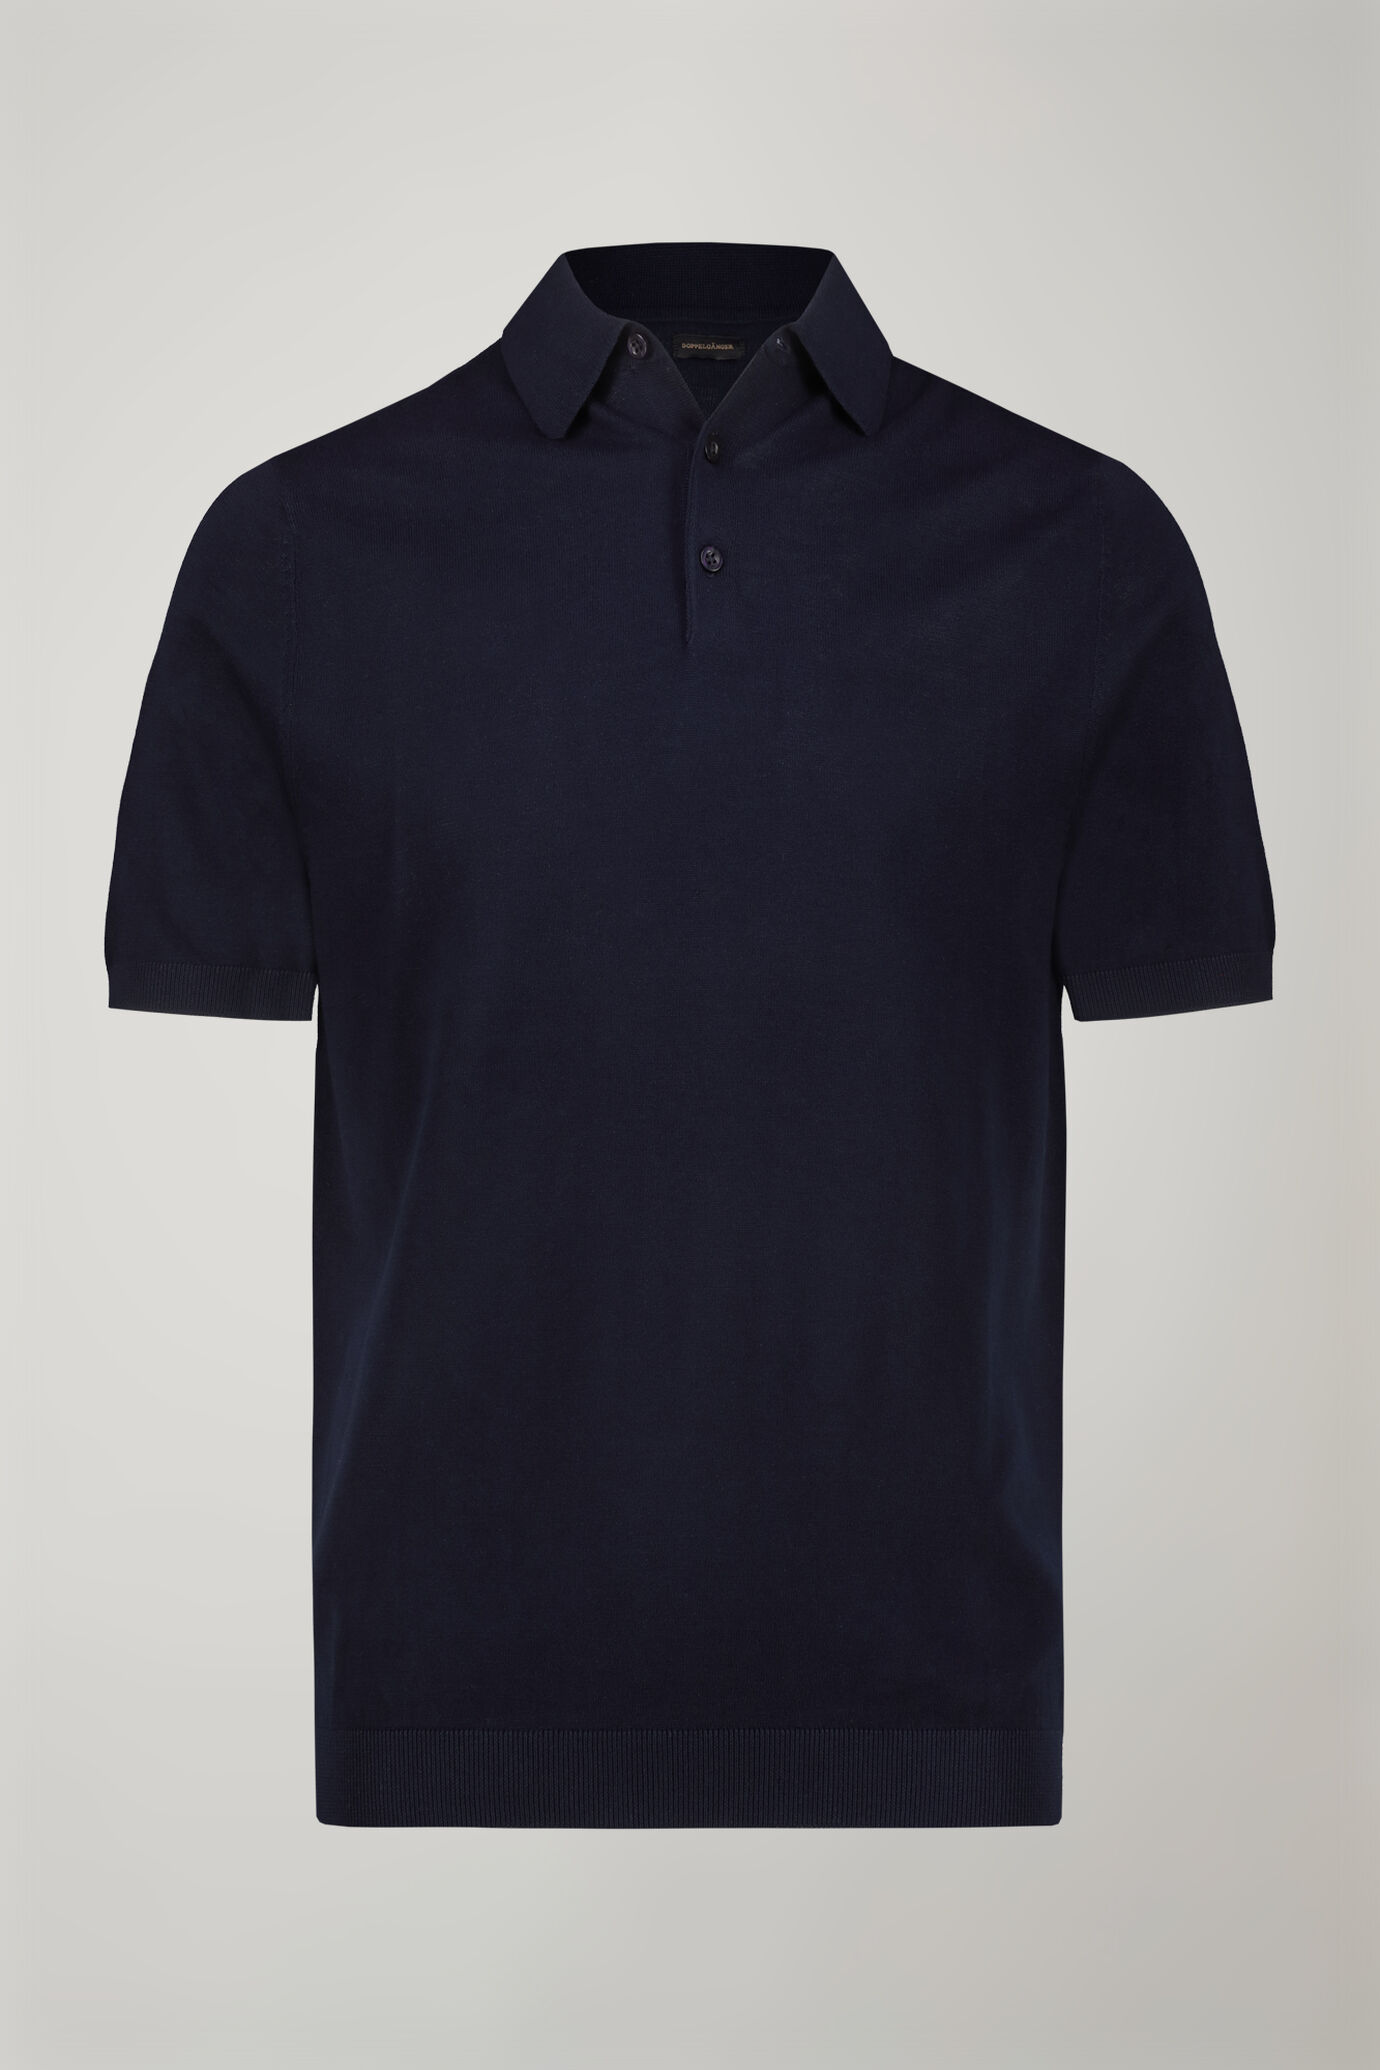 Herren-Poloshirt aus 100 % Baumwolle mit kurzen Ärmeln in normaler Passform image number 4